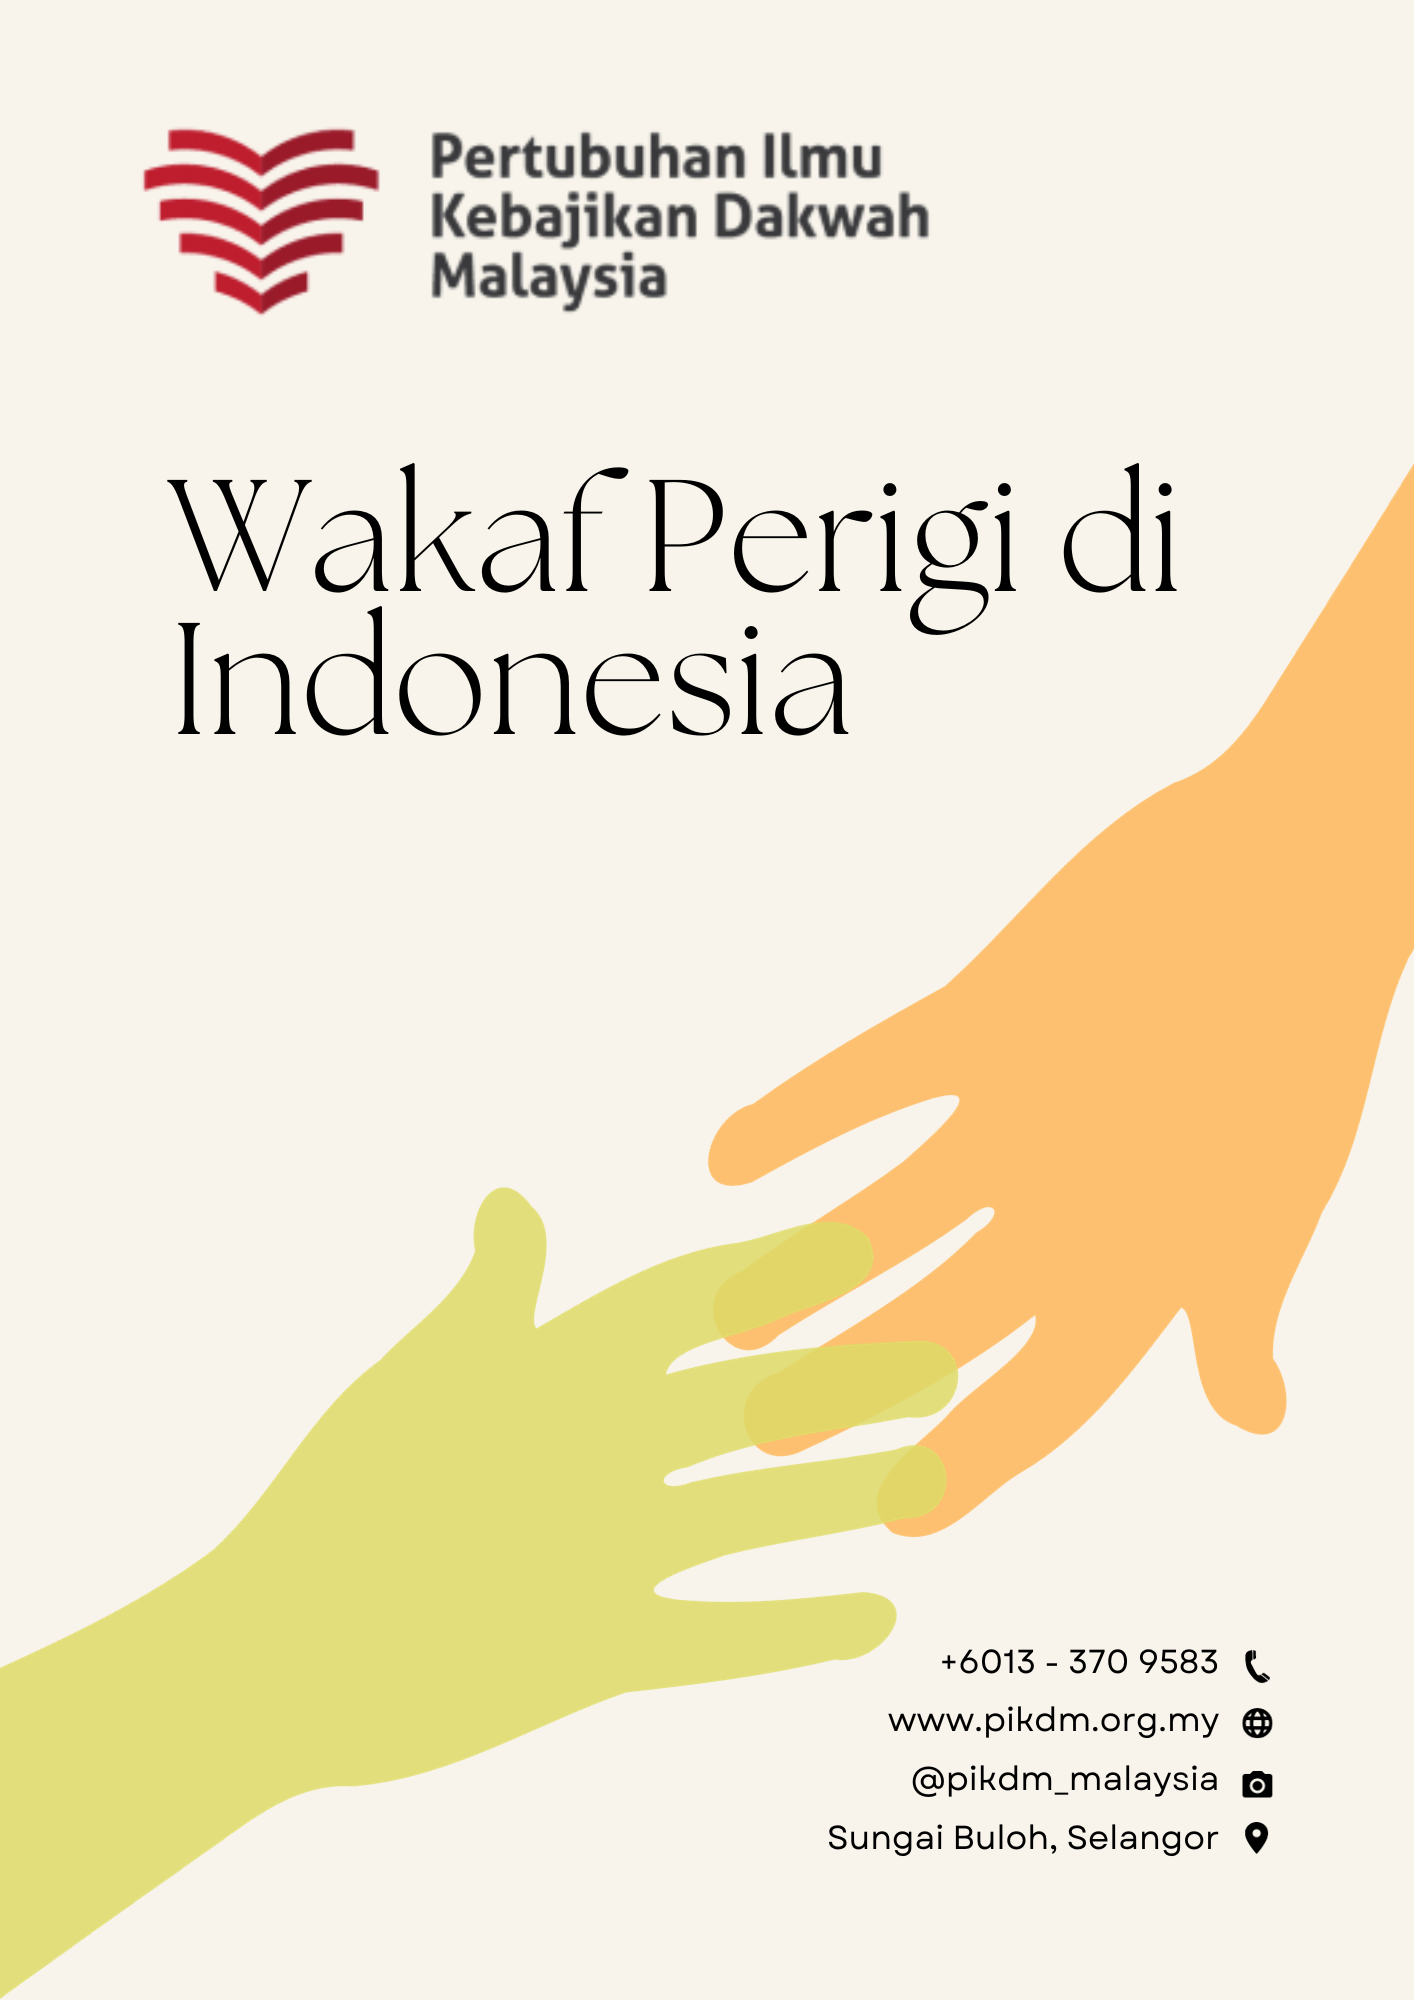 Wakaf Perigi di Indonesia